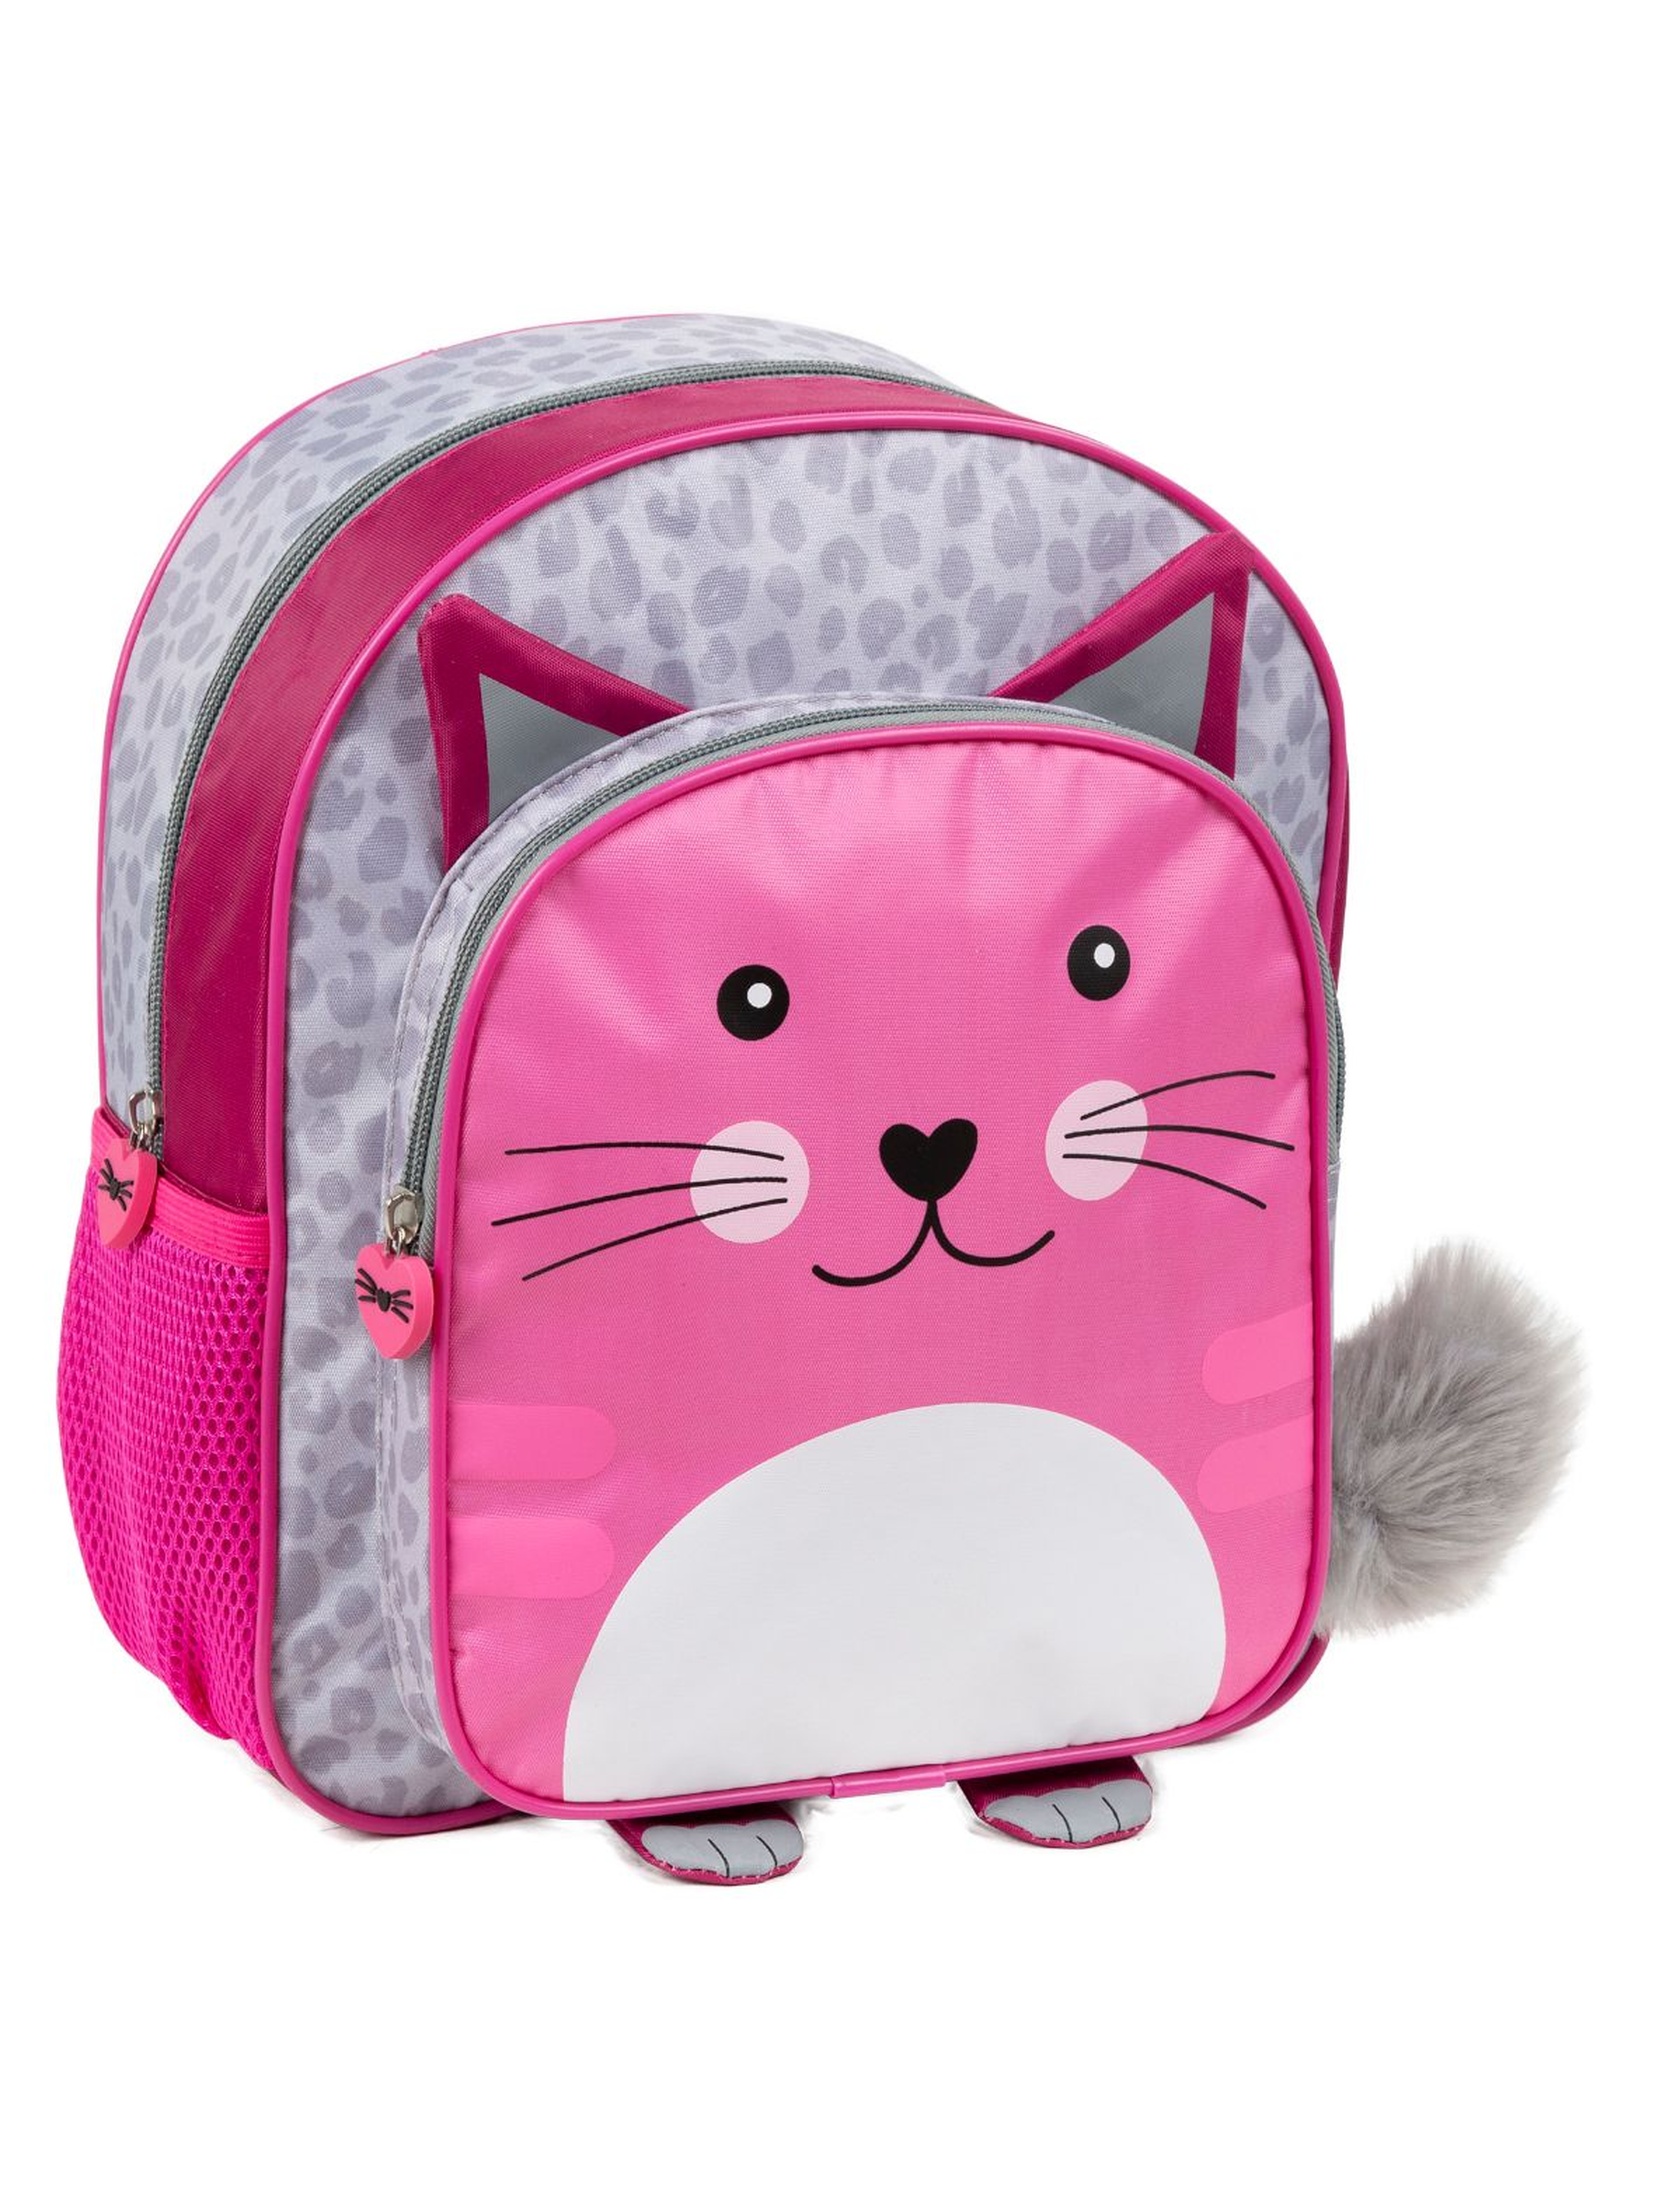 Plecak wycieczkowy Kot- różowy